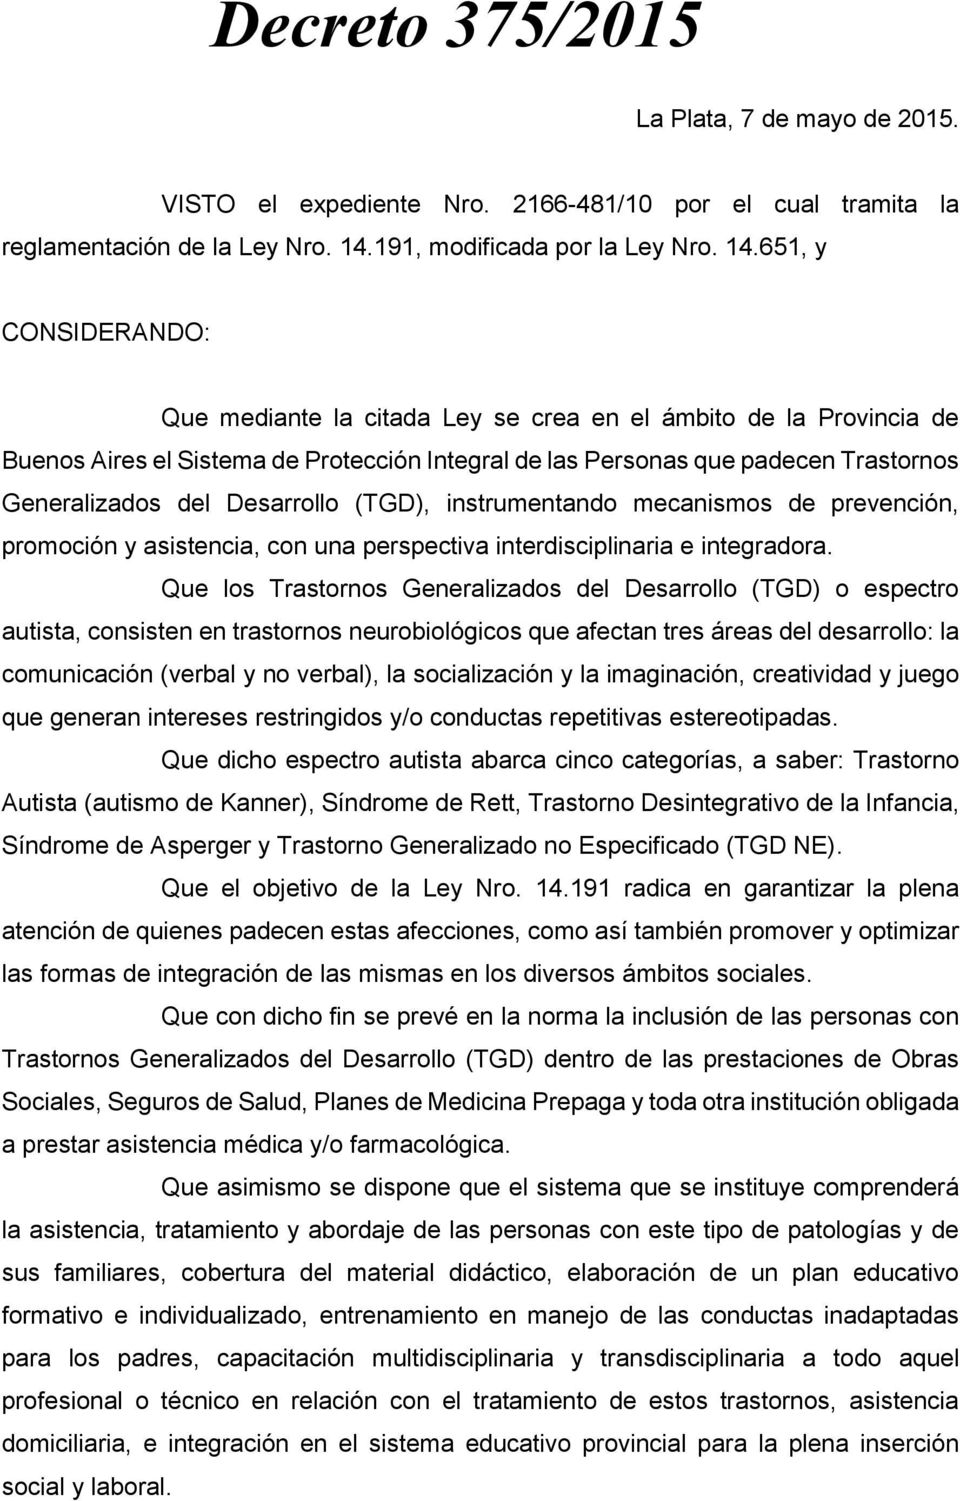 651, y CONSIDERANDO: Que mediante la citada Ley se crea en el ámbito de la Provincia de Buenos Aires el Sistema de Protección Integral de las Personas que padecen Trastornos Generalizados del